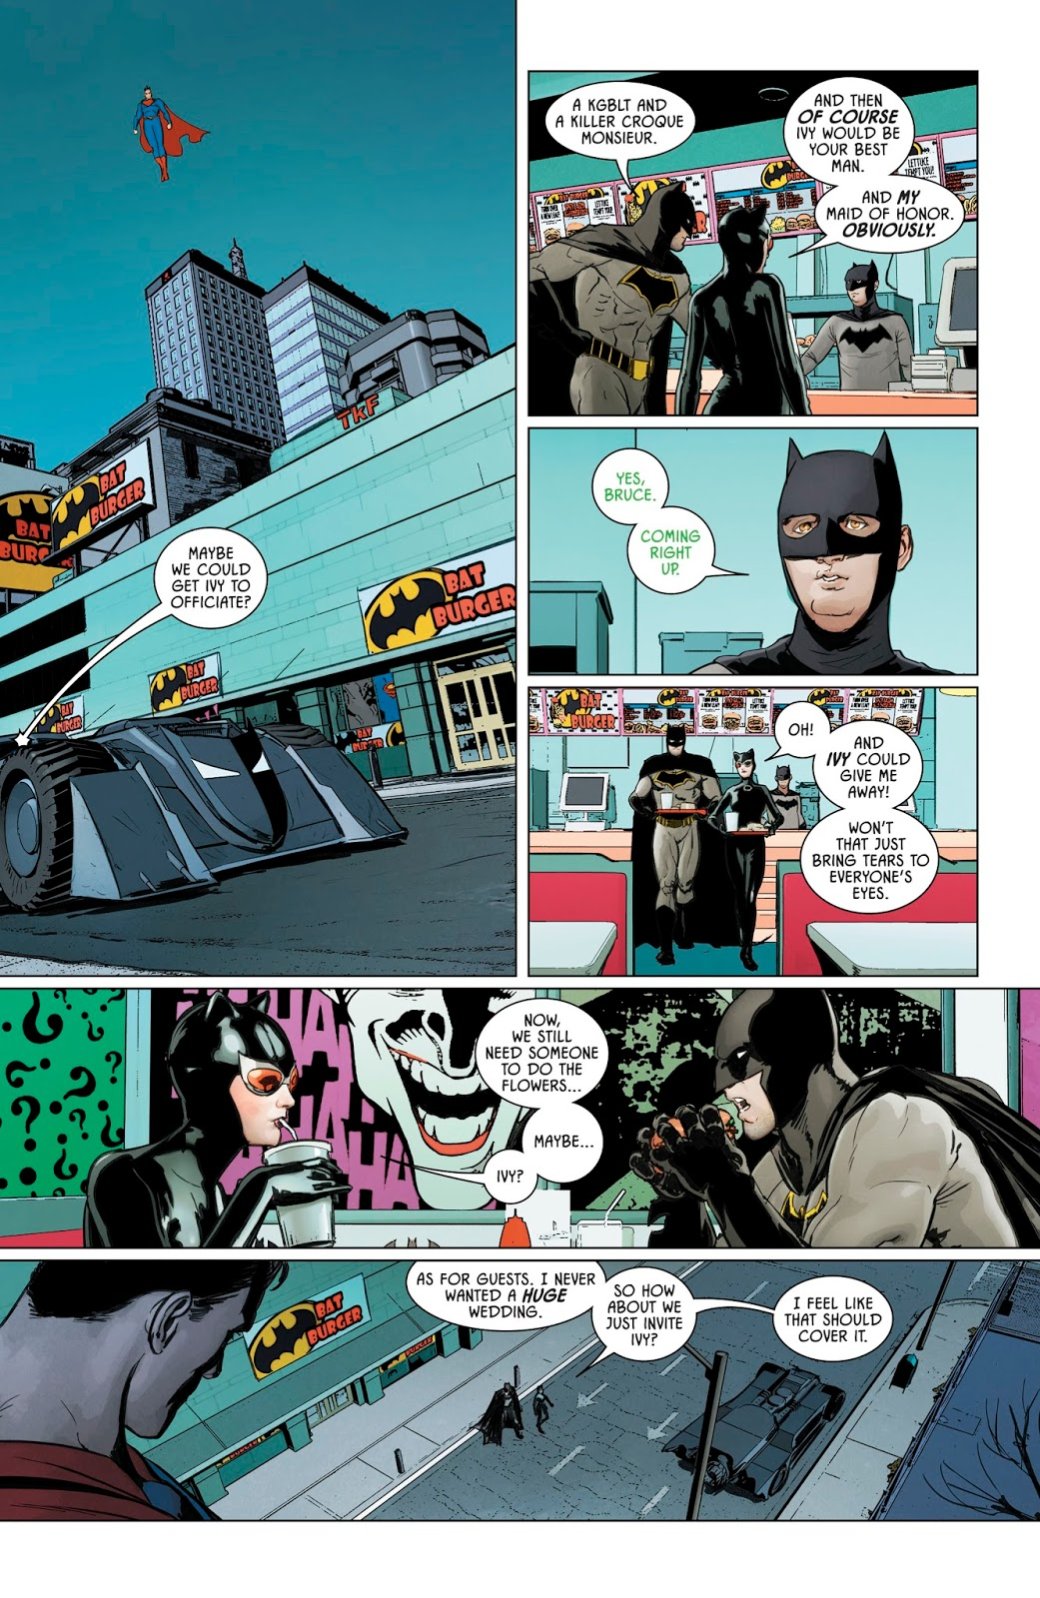 Галерея Ядовитый плющ захватила весь мир, и даже Бэтмен не может ничего с этим поделать. Как так вышло? - 2 фото